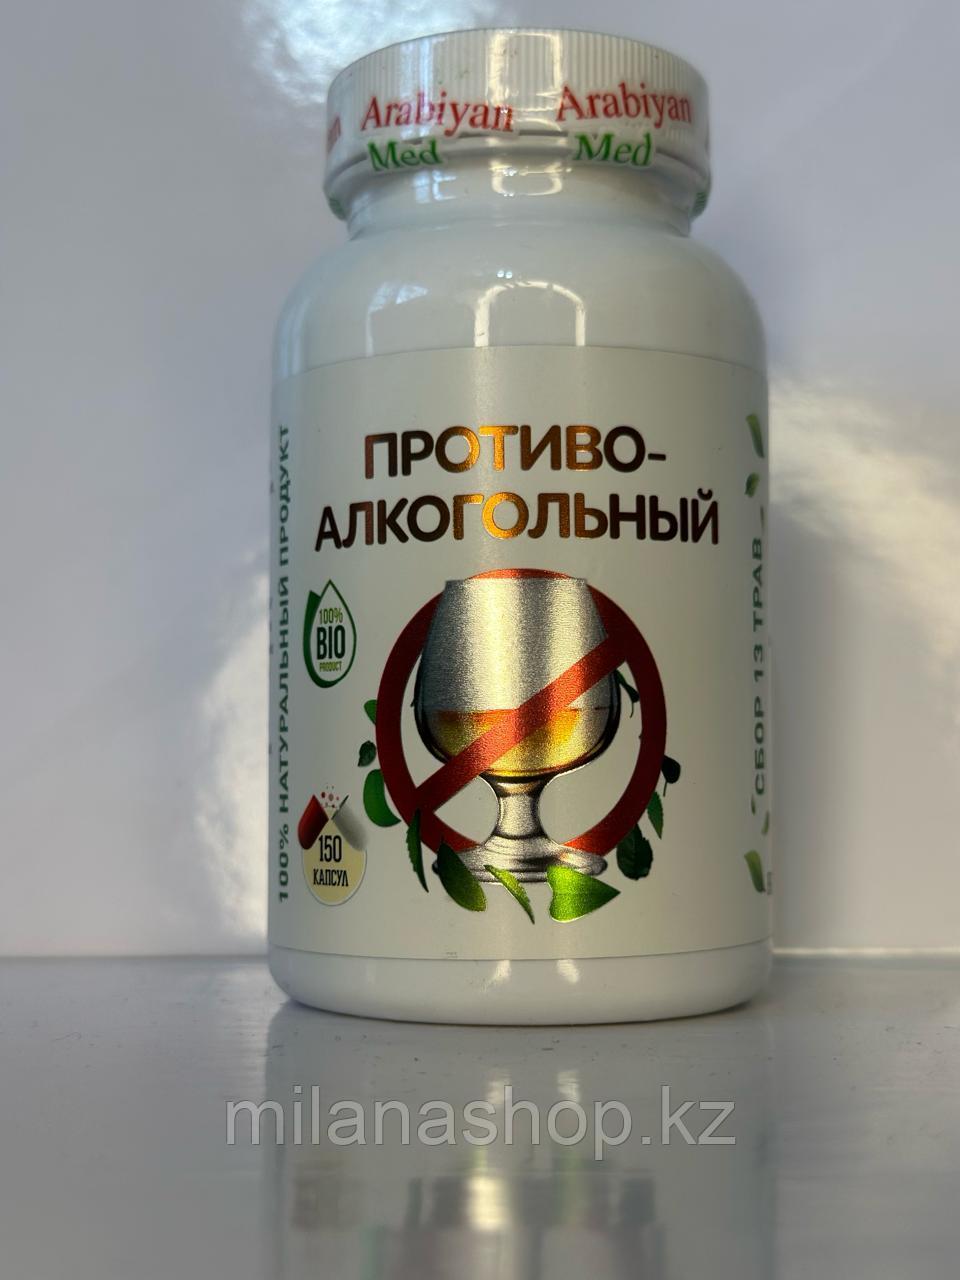 Arabiyan Med - Противо-алкогольный 150 капсул